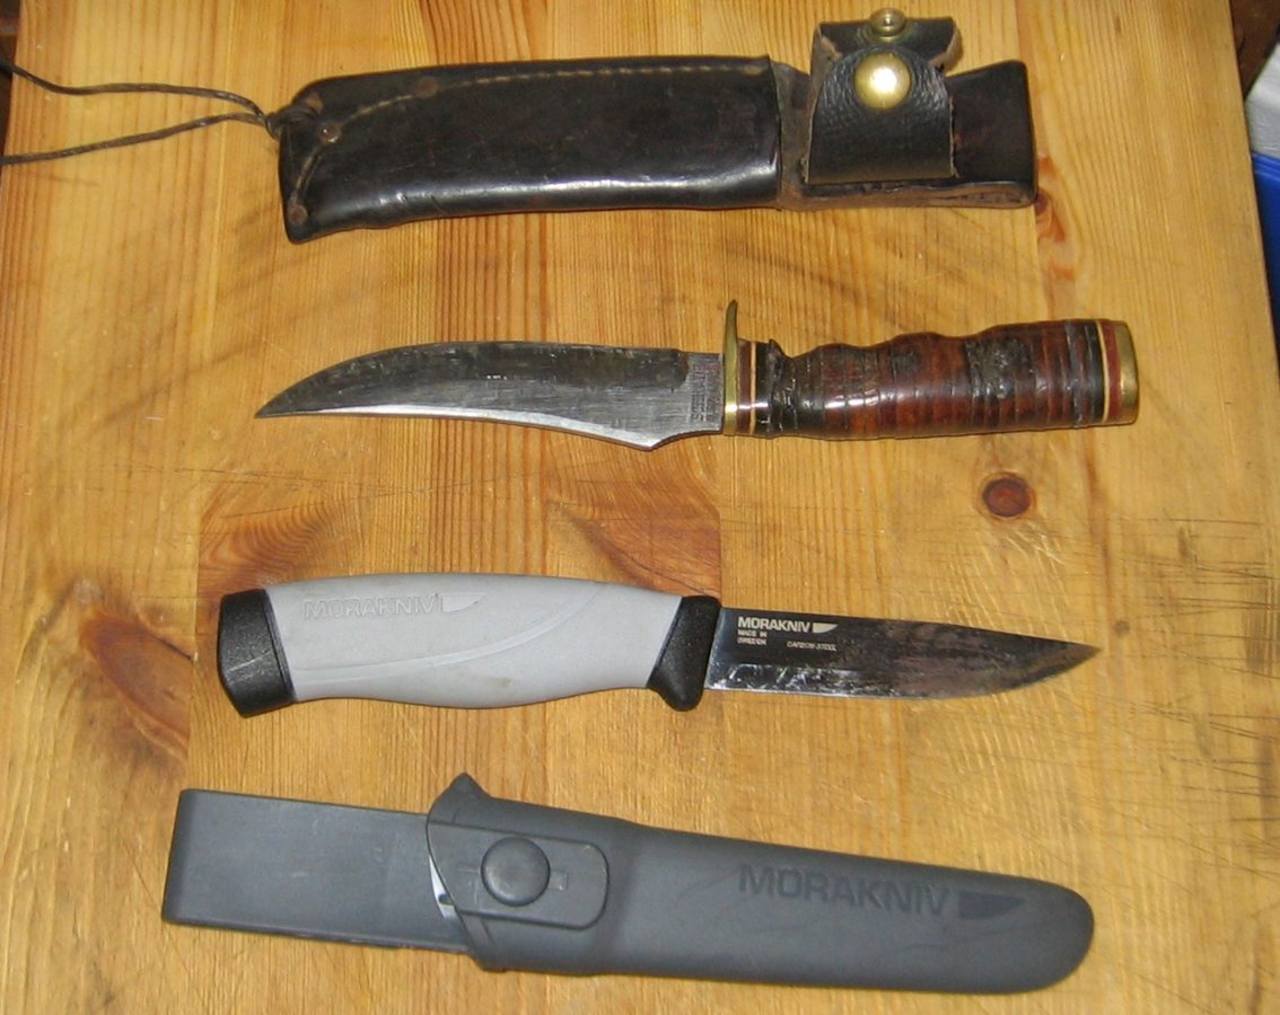 Camp knives